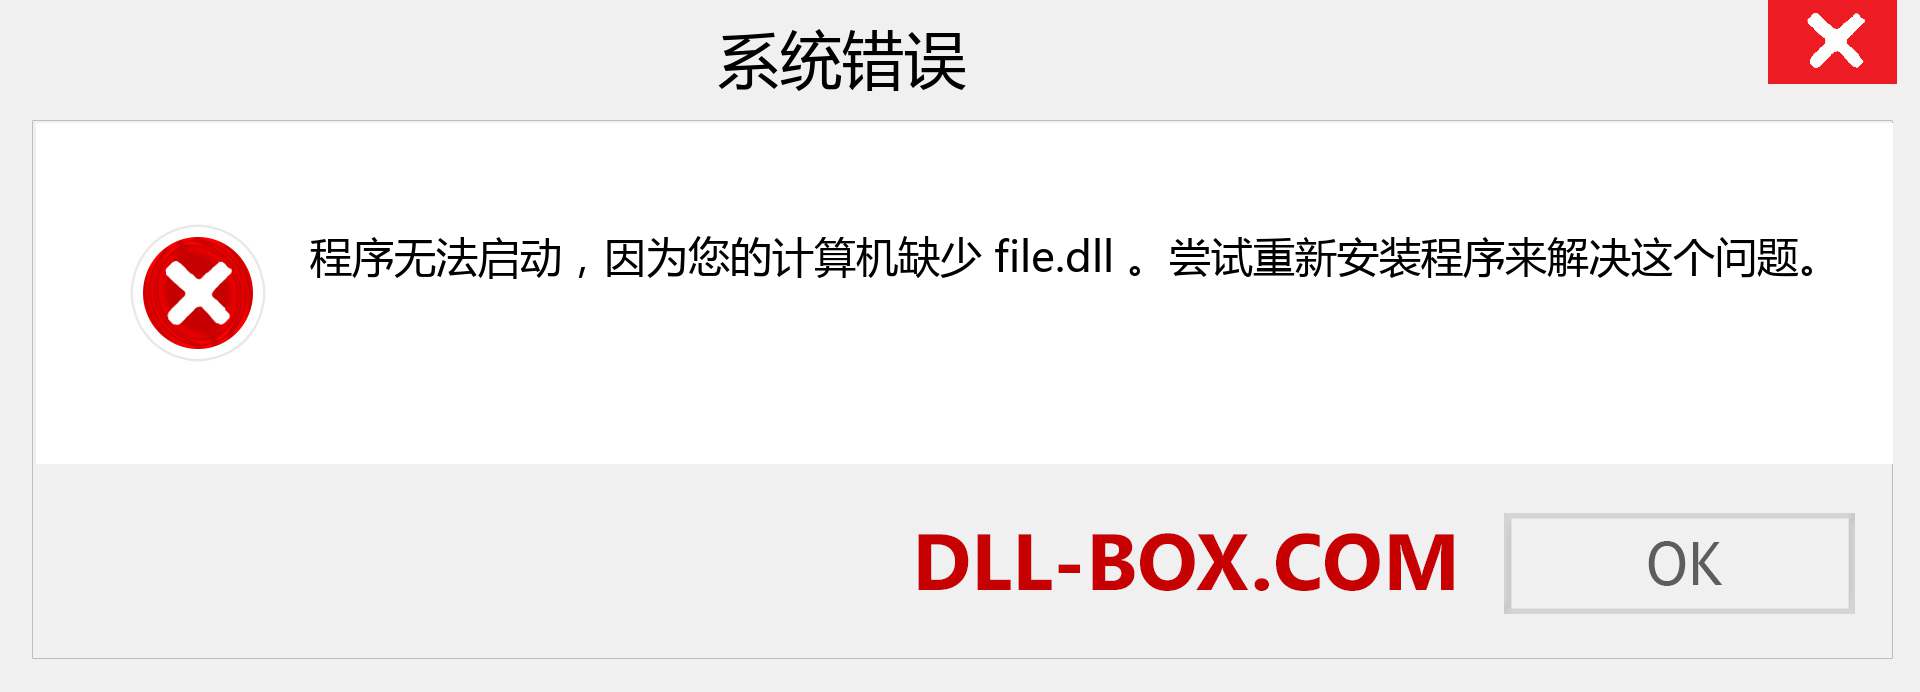 file.dll 文件丢失？。 适用于 Windows 7、8、10 的下载 - 修复 Windows、照片、图像上的 file dll 丢失错误